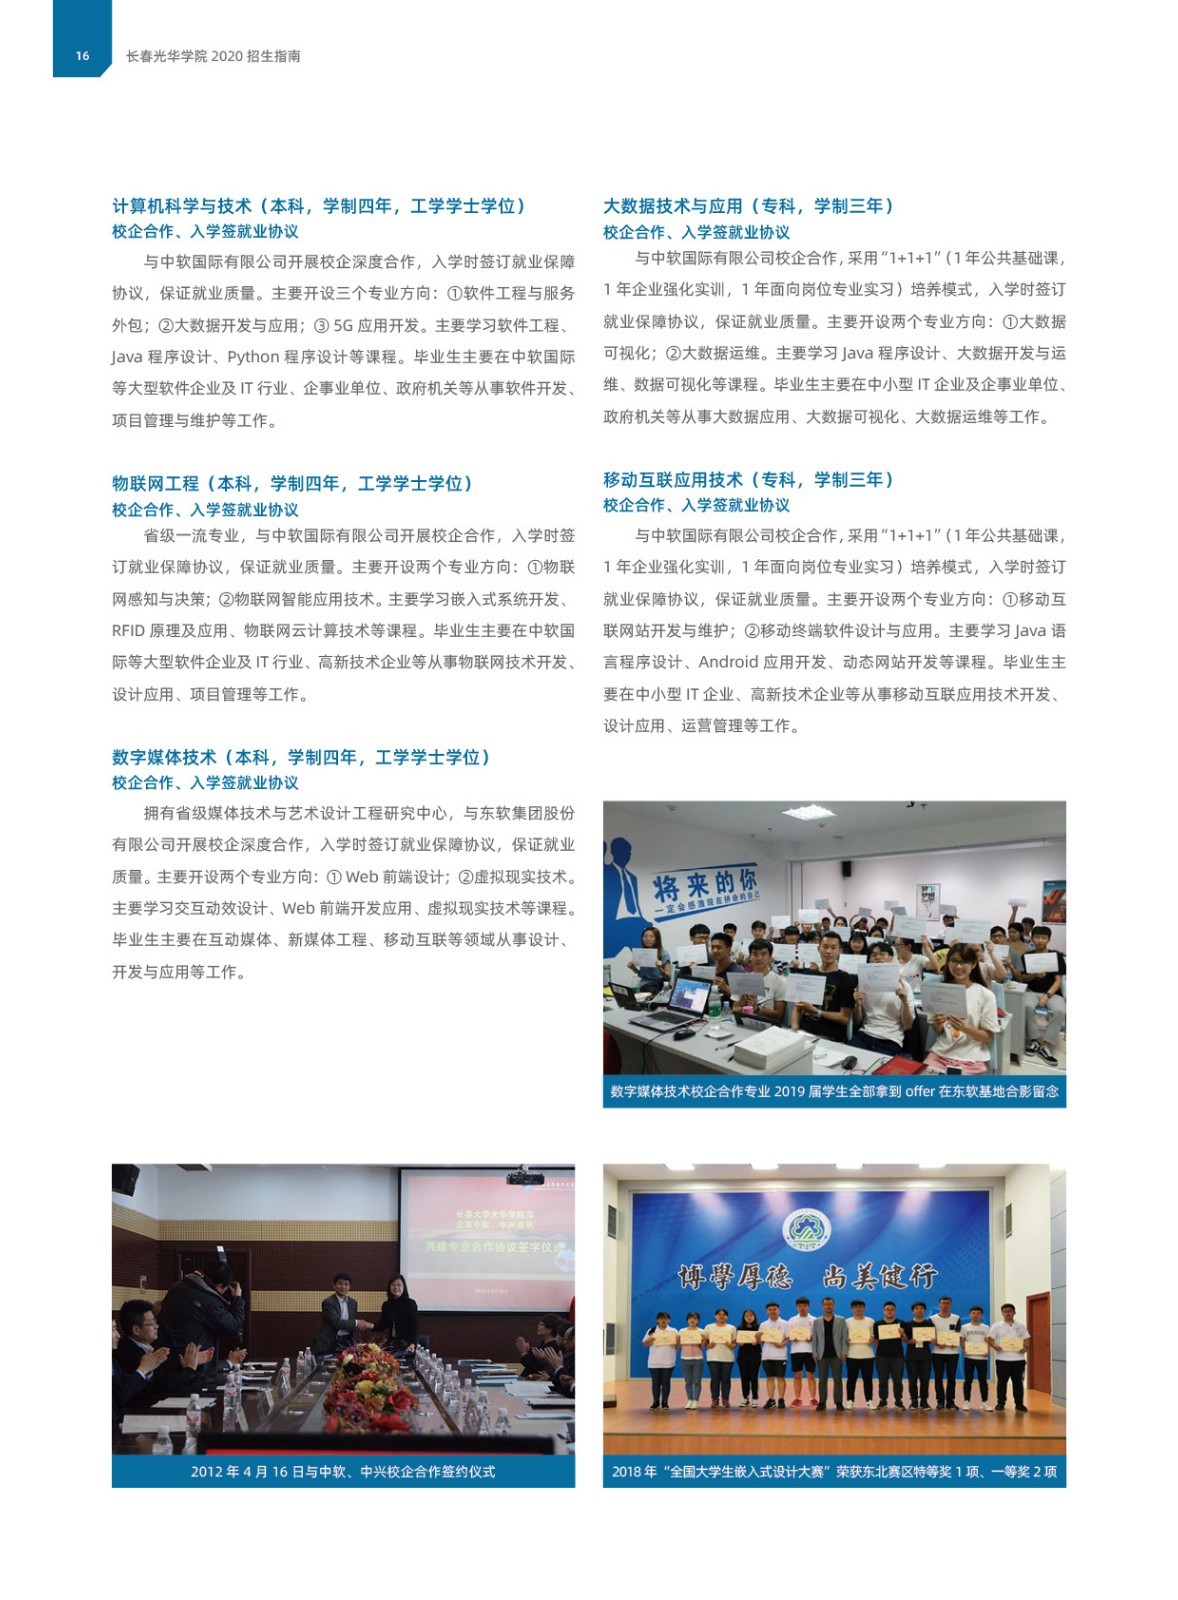 长春光华学院2020年招生指南(图文版)